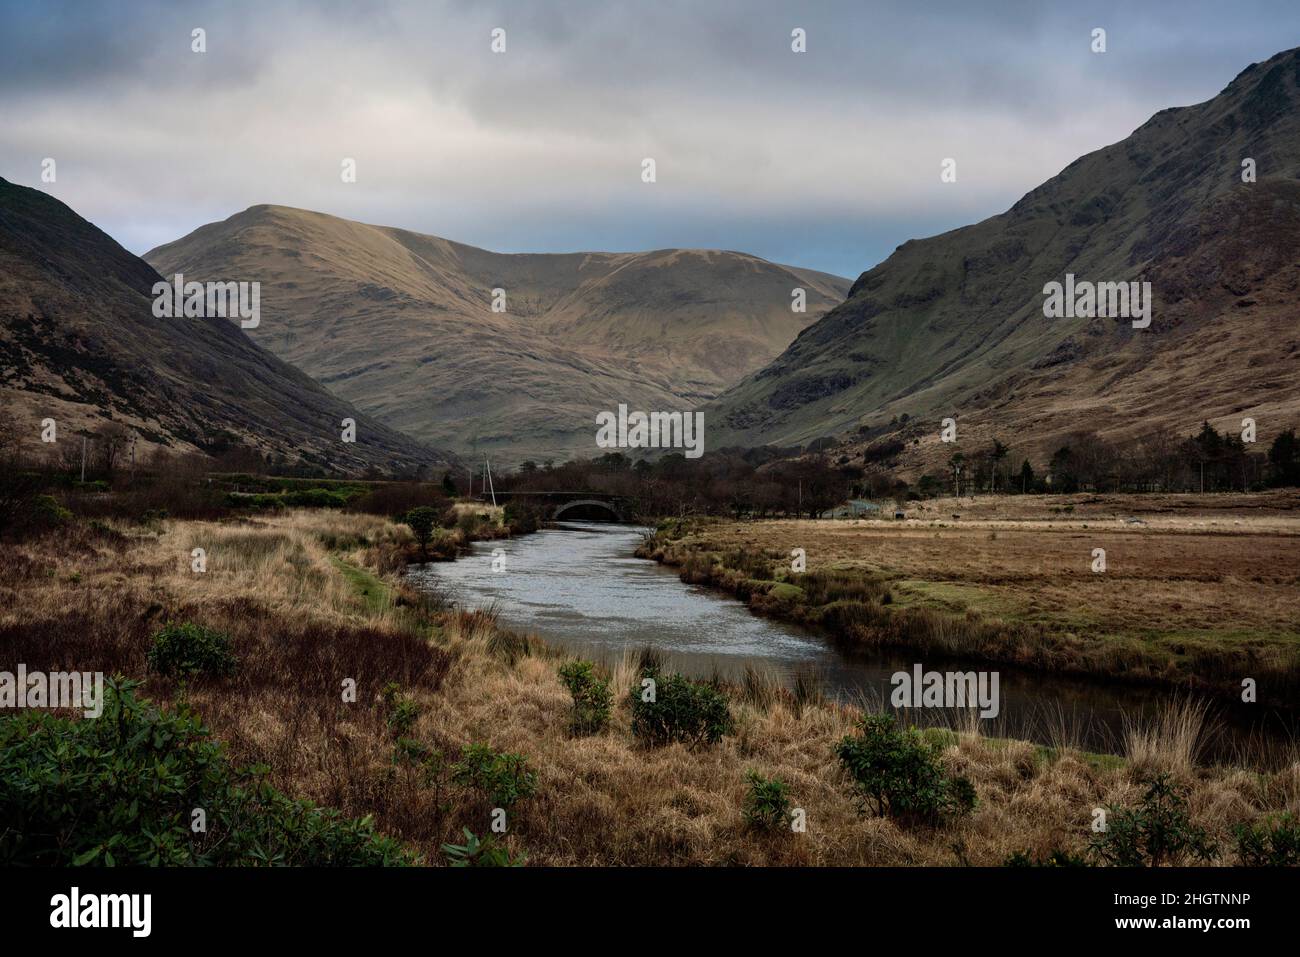 Une rivière et la tourbe brune couvraient les montagnes dans le parc national du Connemara, comté de Galway Irlande en automne. Banque D'Images